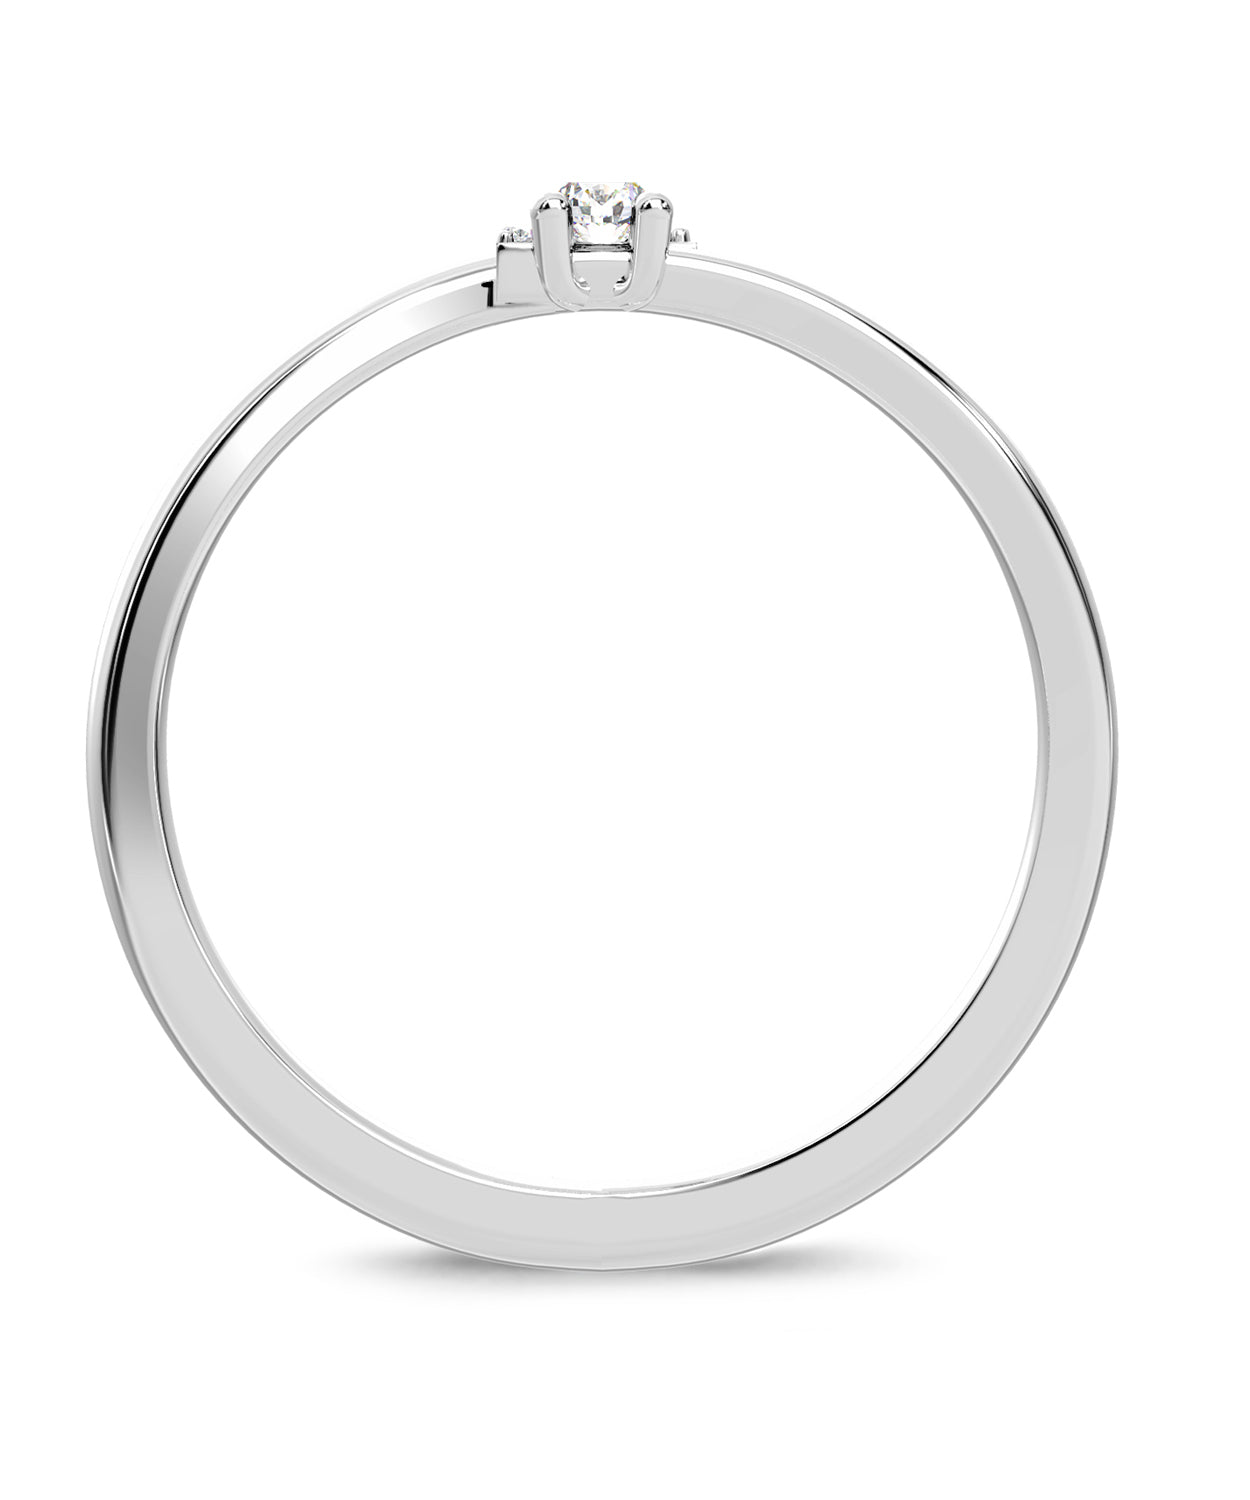 ESEMCO Diamond 18k White Gold Letter E Initial Open Ring View 2